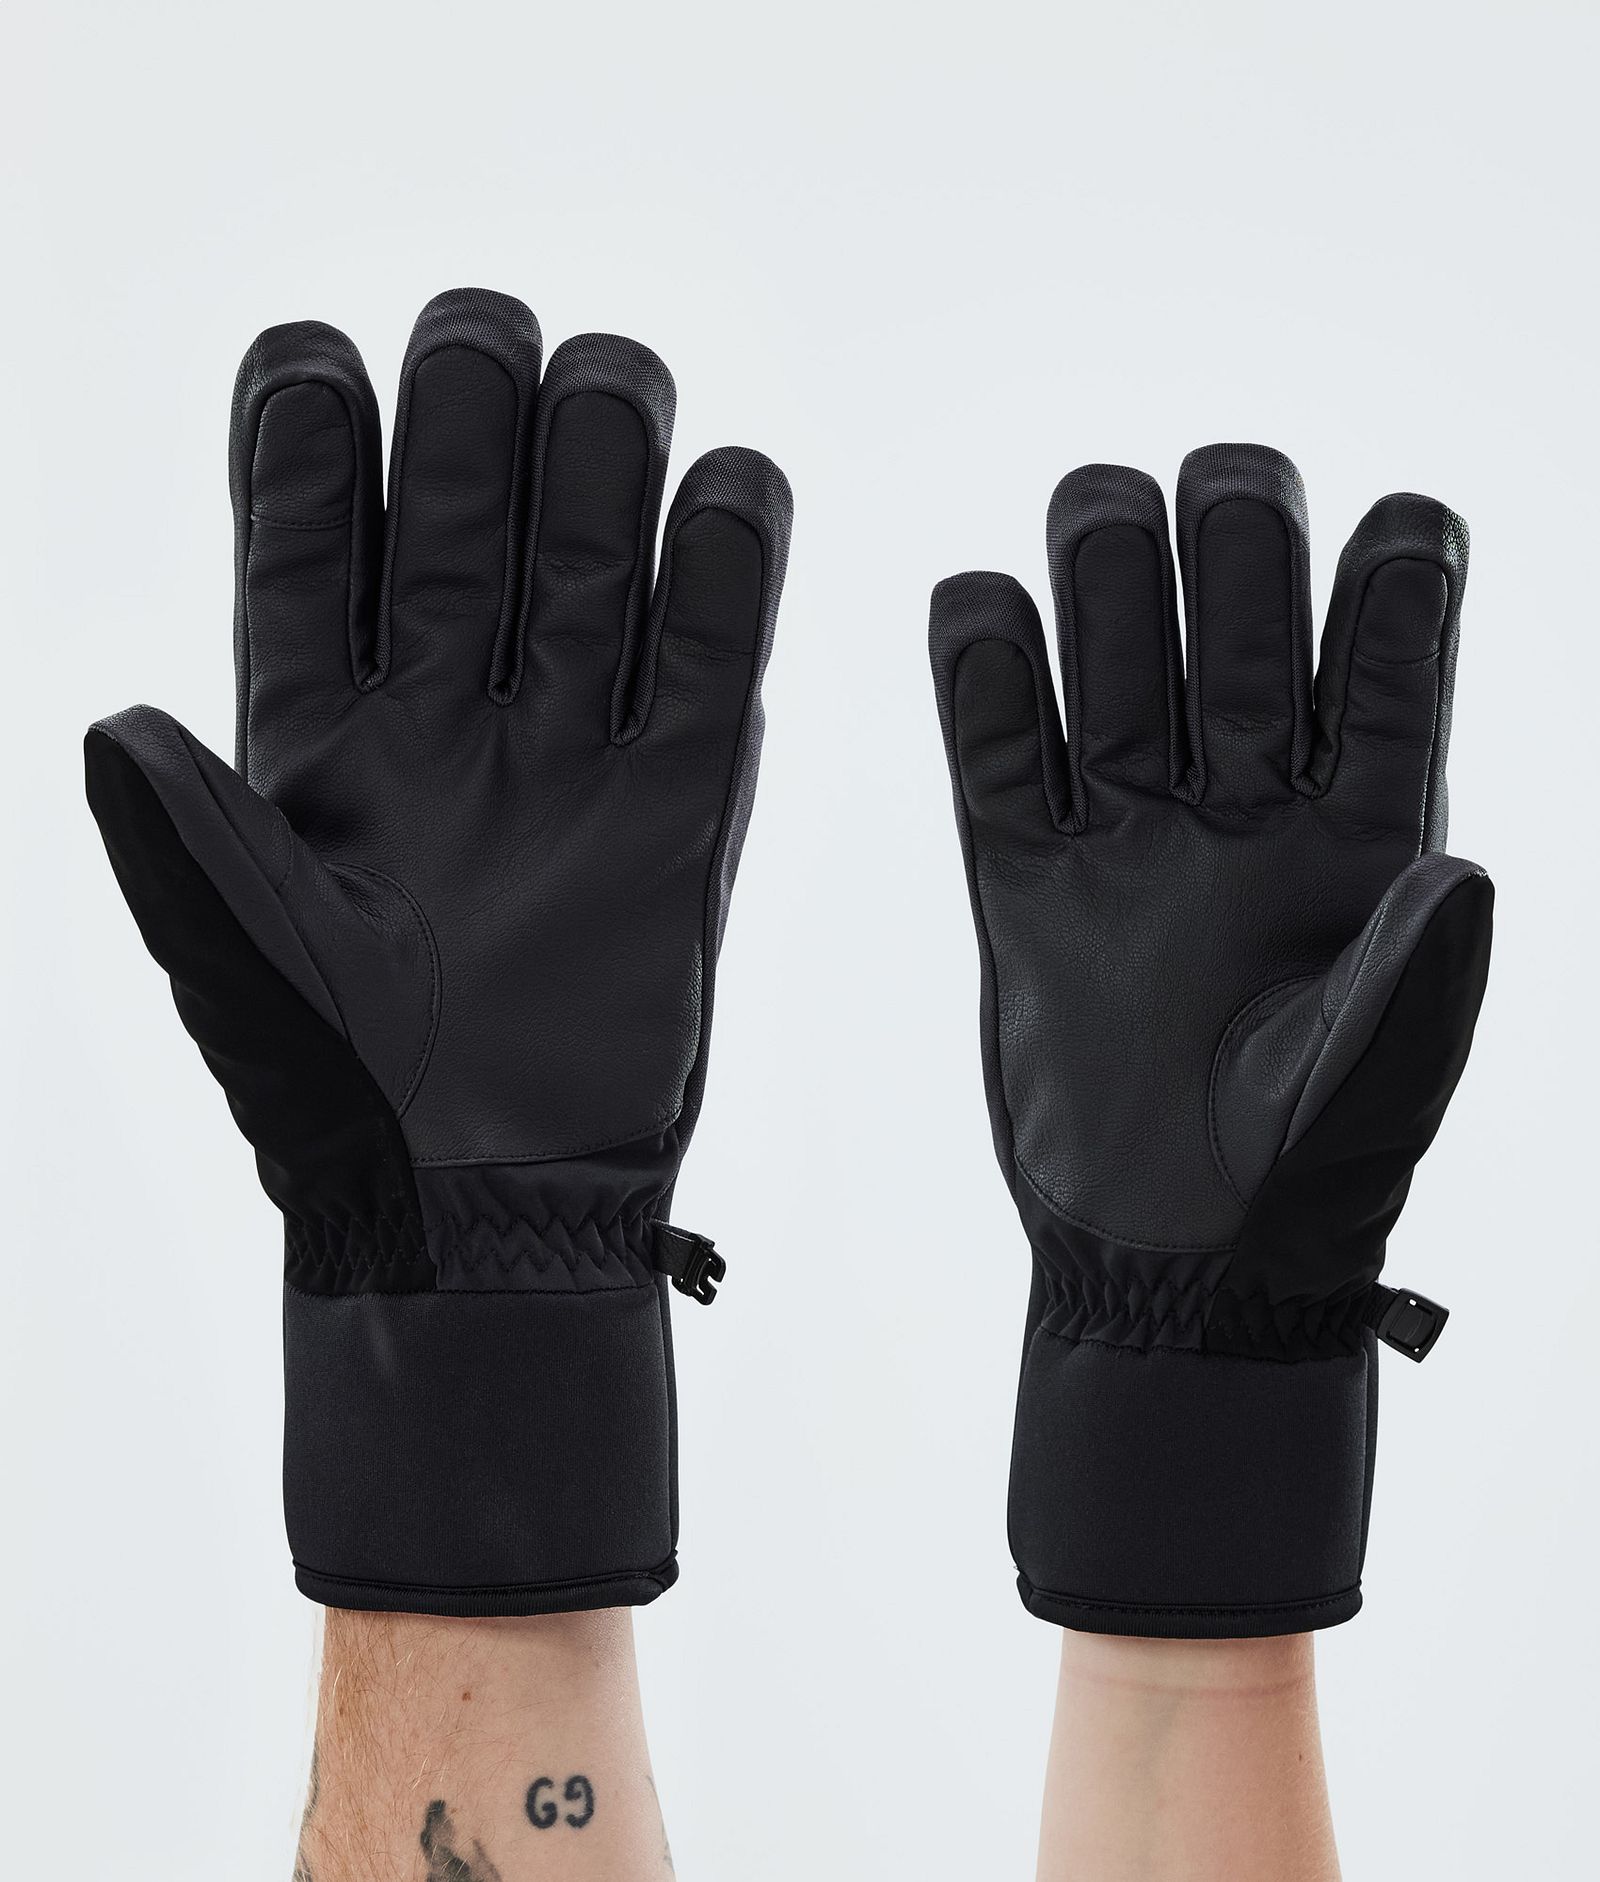 Kilo 2022 Ski Gloves Black, Image 2 of 5